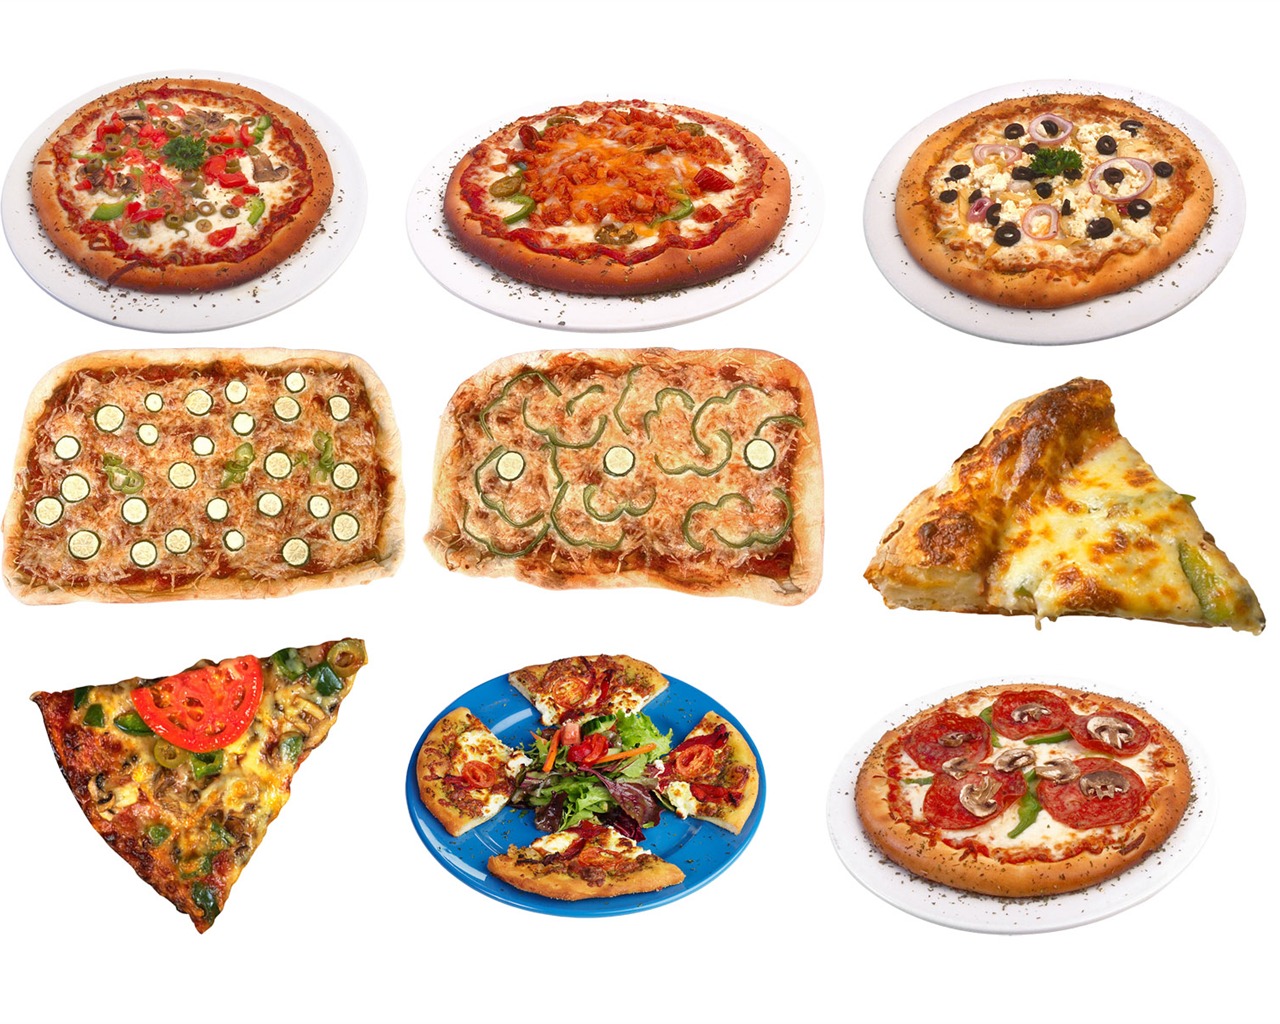 Fondos de pizzerías de Alimentos (3) #17 - 1280x1024